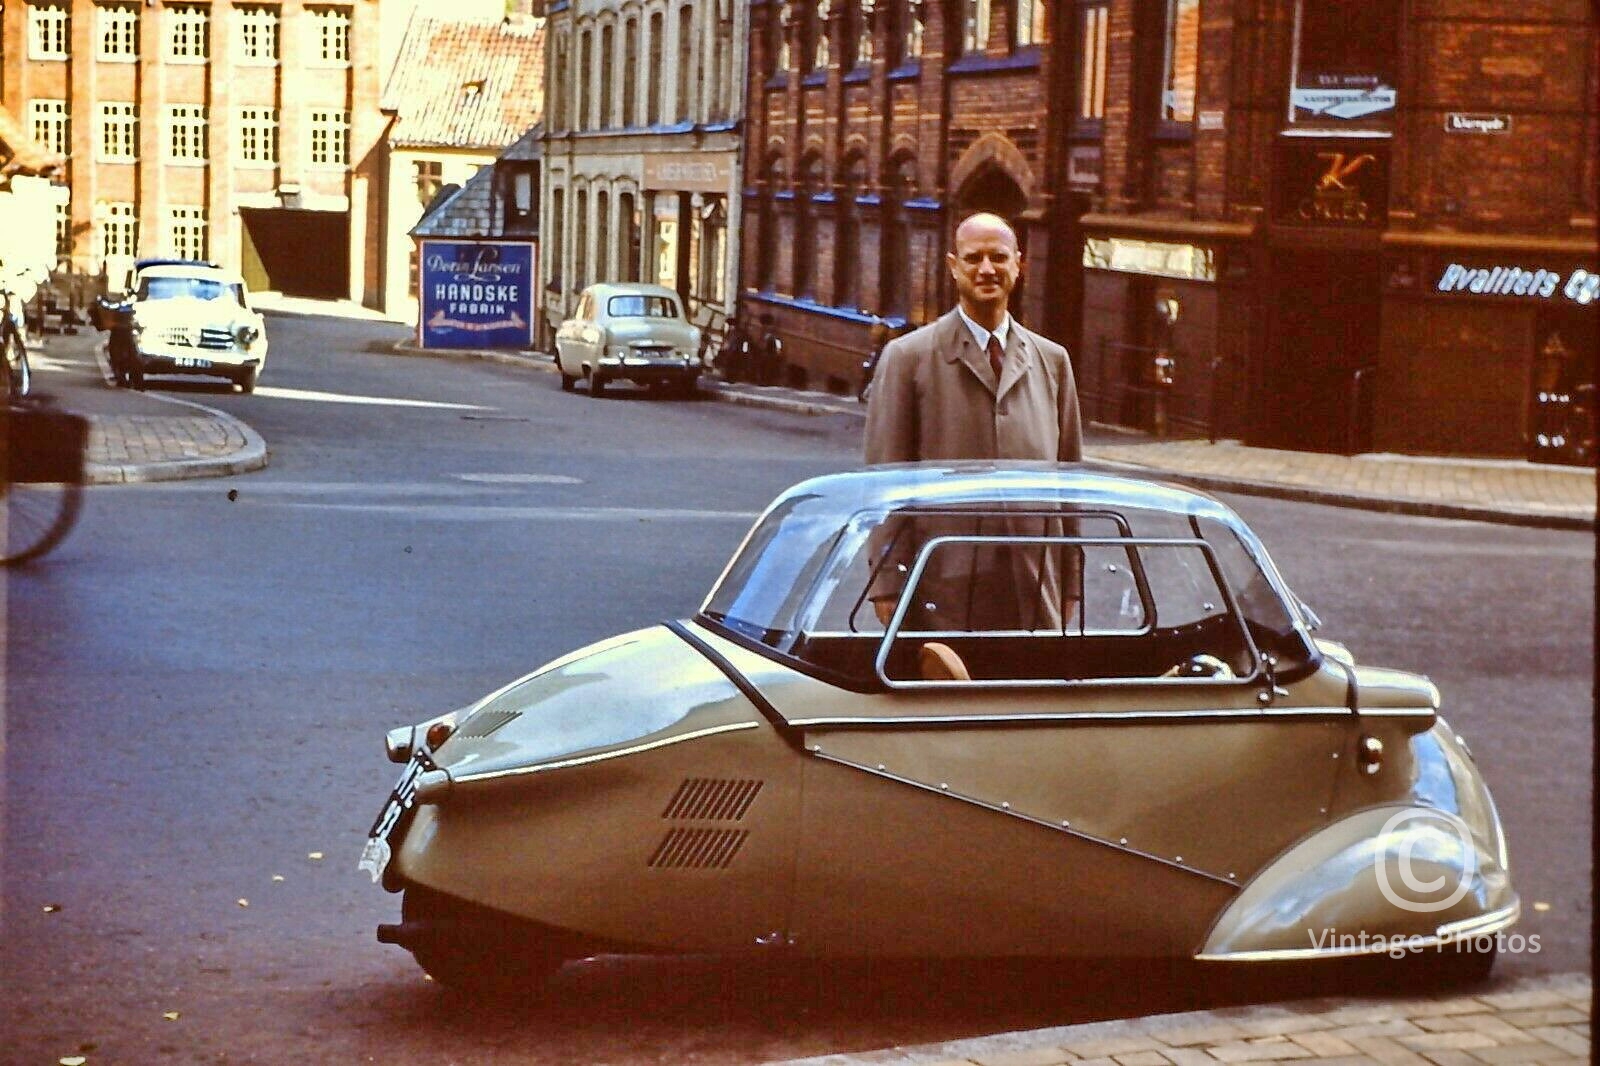 1960s Messerschmit Auto Parked on Street